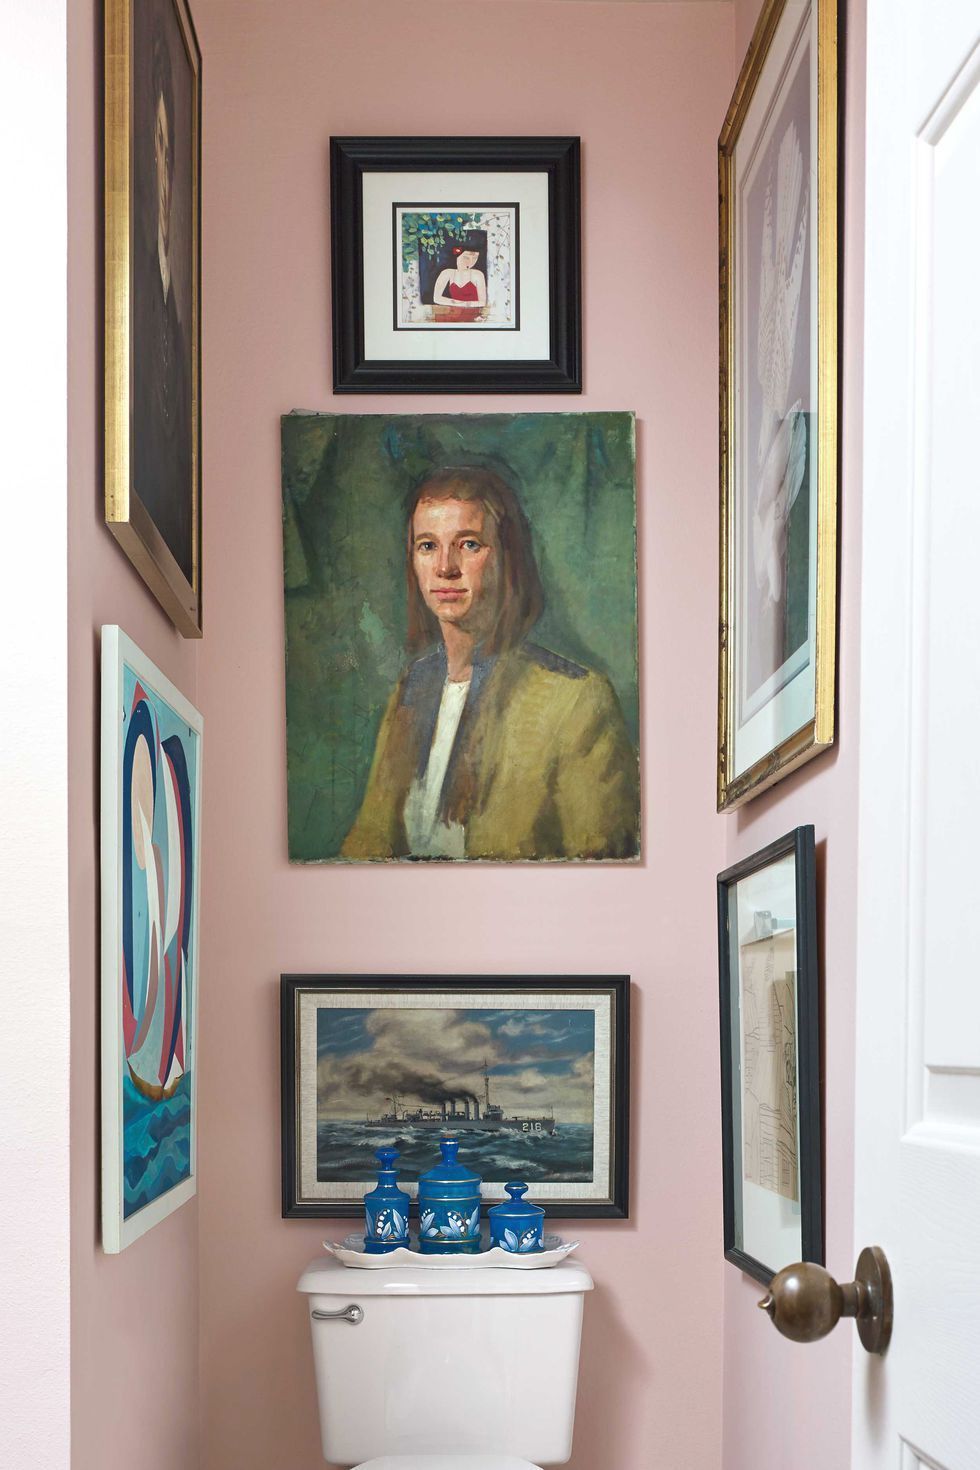 Hình ảnh một góc phòng tắm với tường sơn màu hồng nhạt, bộ tranh chân dung nổi bật